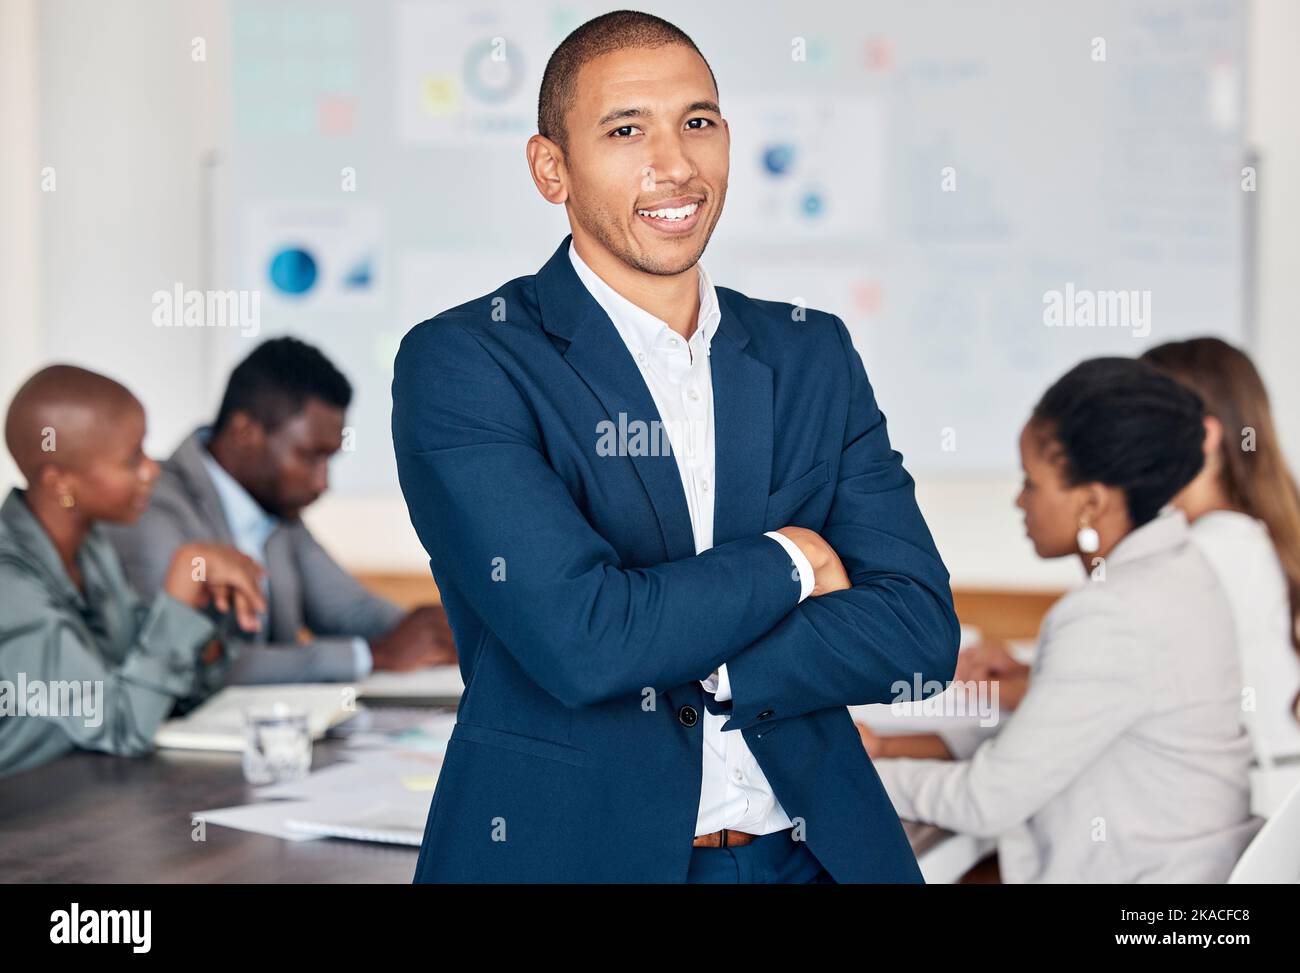 Führung, ceo und schwarzer Mann freuen sich bei einem Büromeeting zu Schulungen, Workshops und Management in einem Unternehmensbüro. Männlicher Chef, Unternehmer und Stockfoto